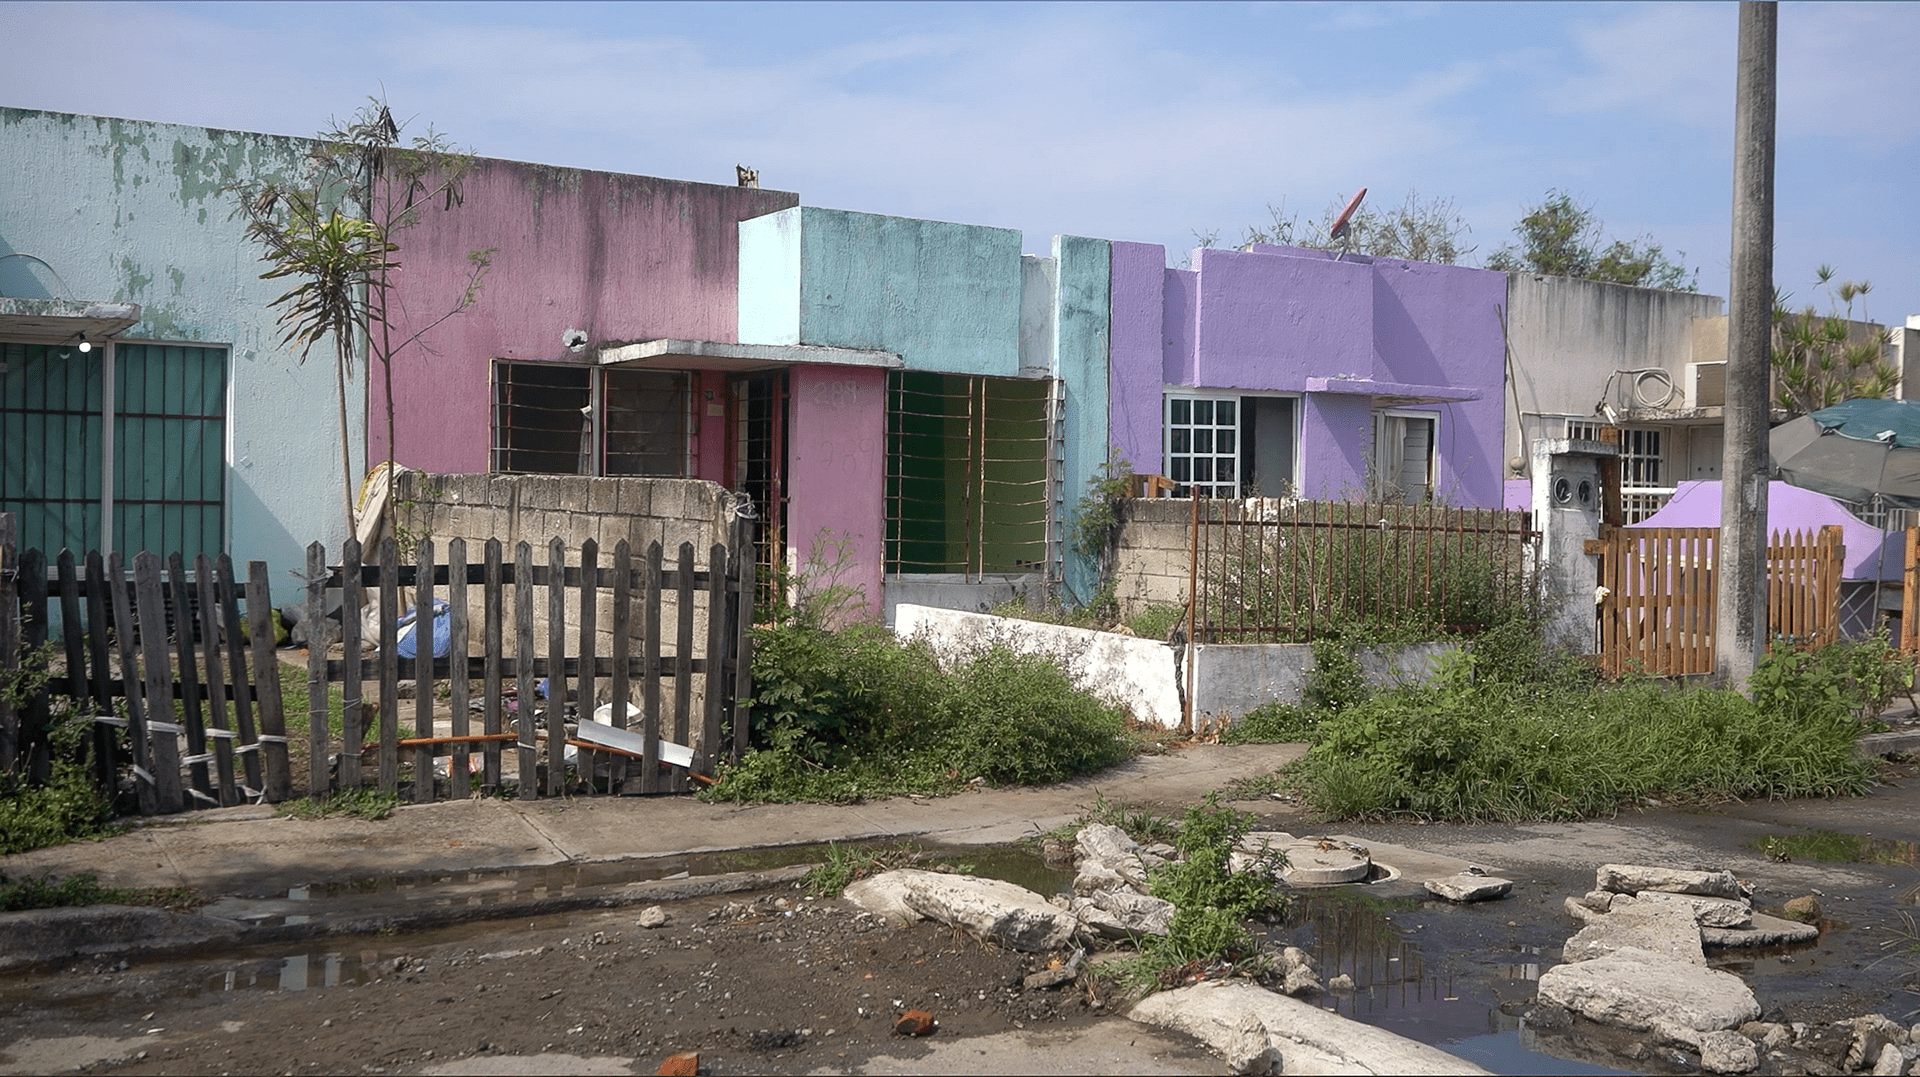 Pantano de promesas: el abandono de viviendas en Colinas de Santa Fe